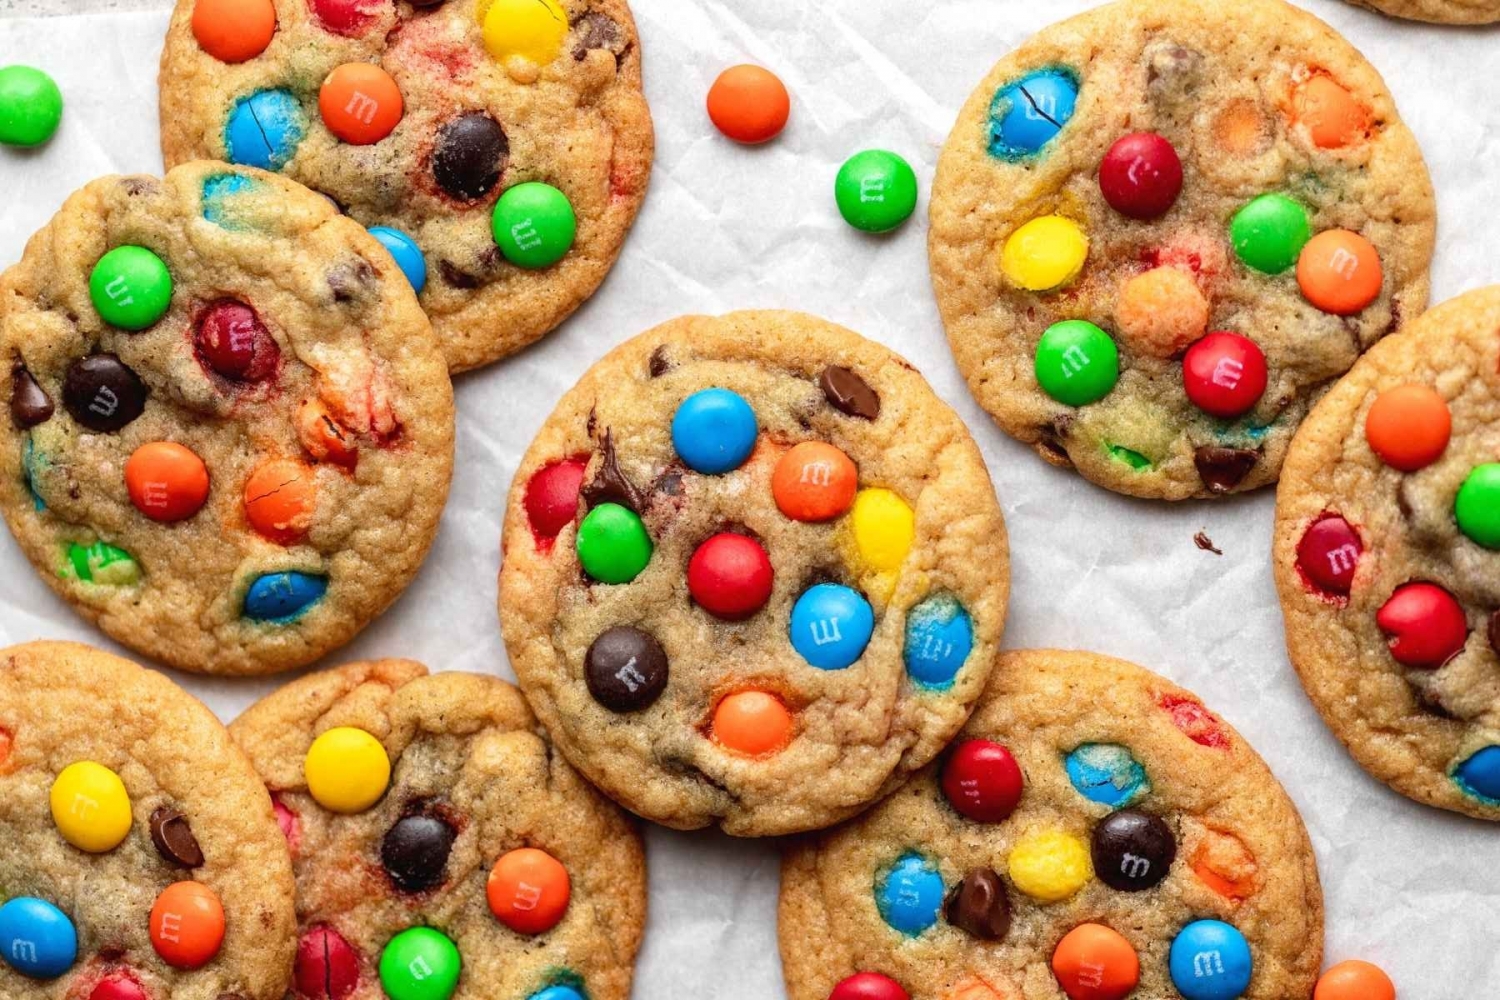 Trắc nghiệm: Chiếc bánh quy yêu thích tiết lộ điều gì về tính cách của bạn?